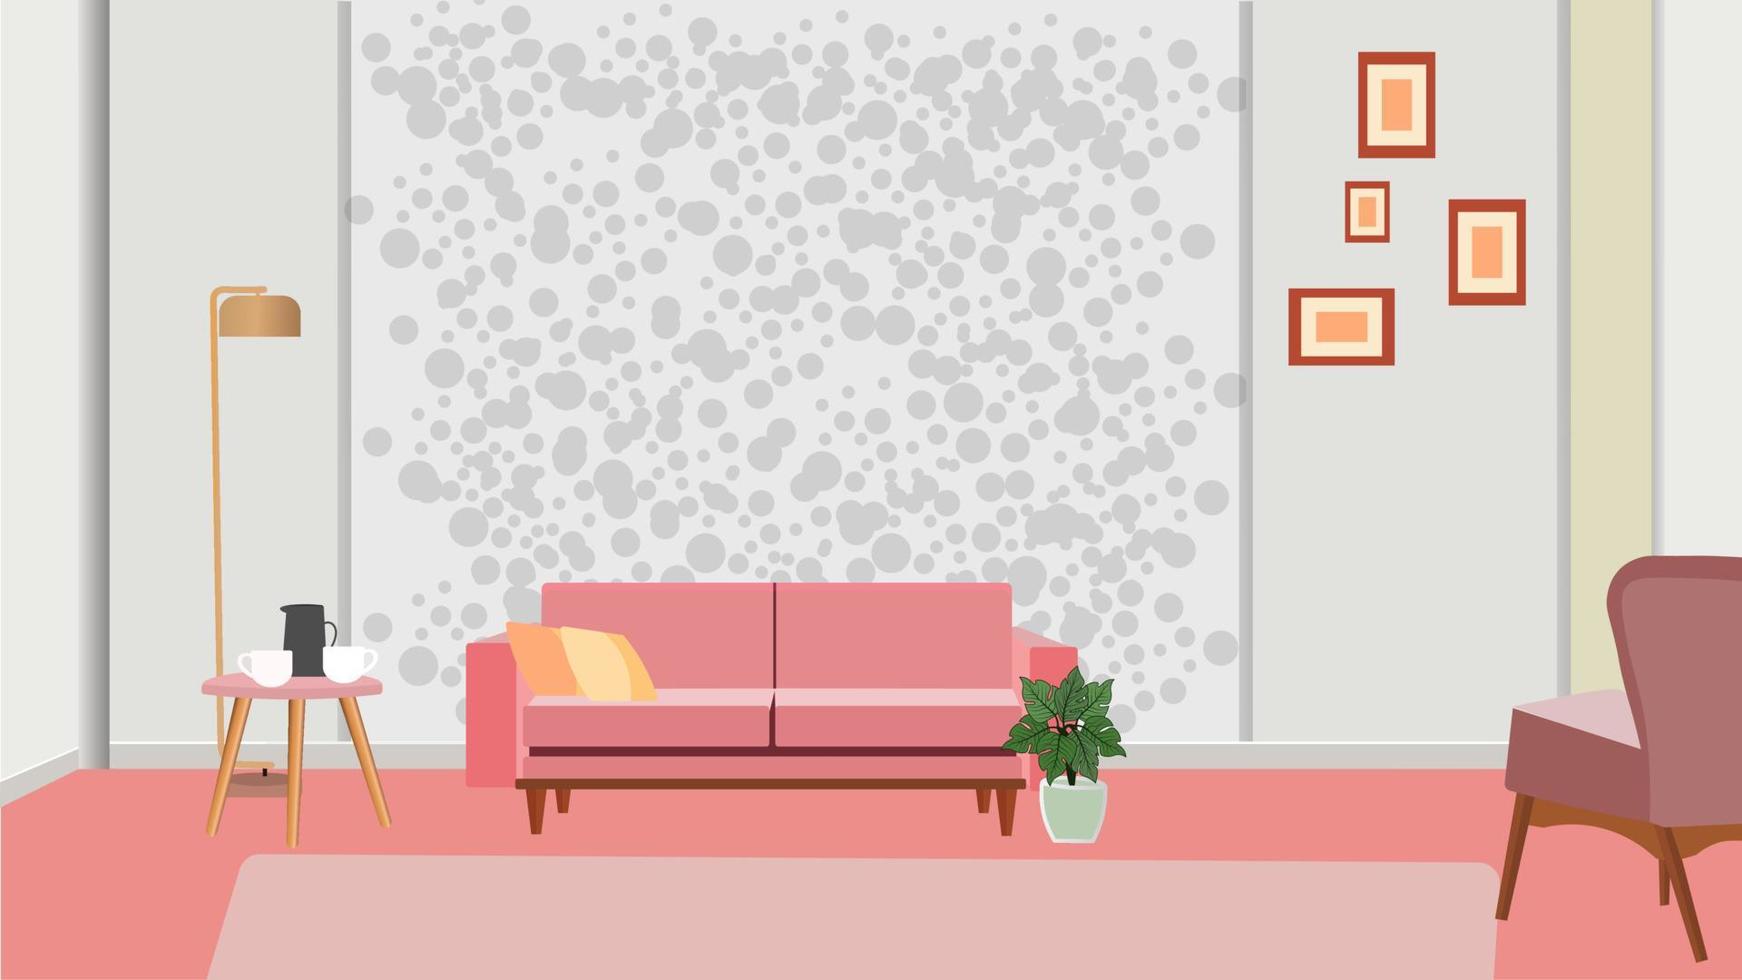 muebles. interior. salón con sofá, mesa, lámpara, cuadros, ventana. vector. la ilustración de vector de comedor y sala de estar